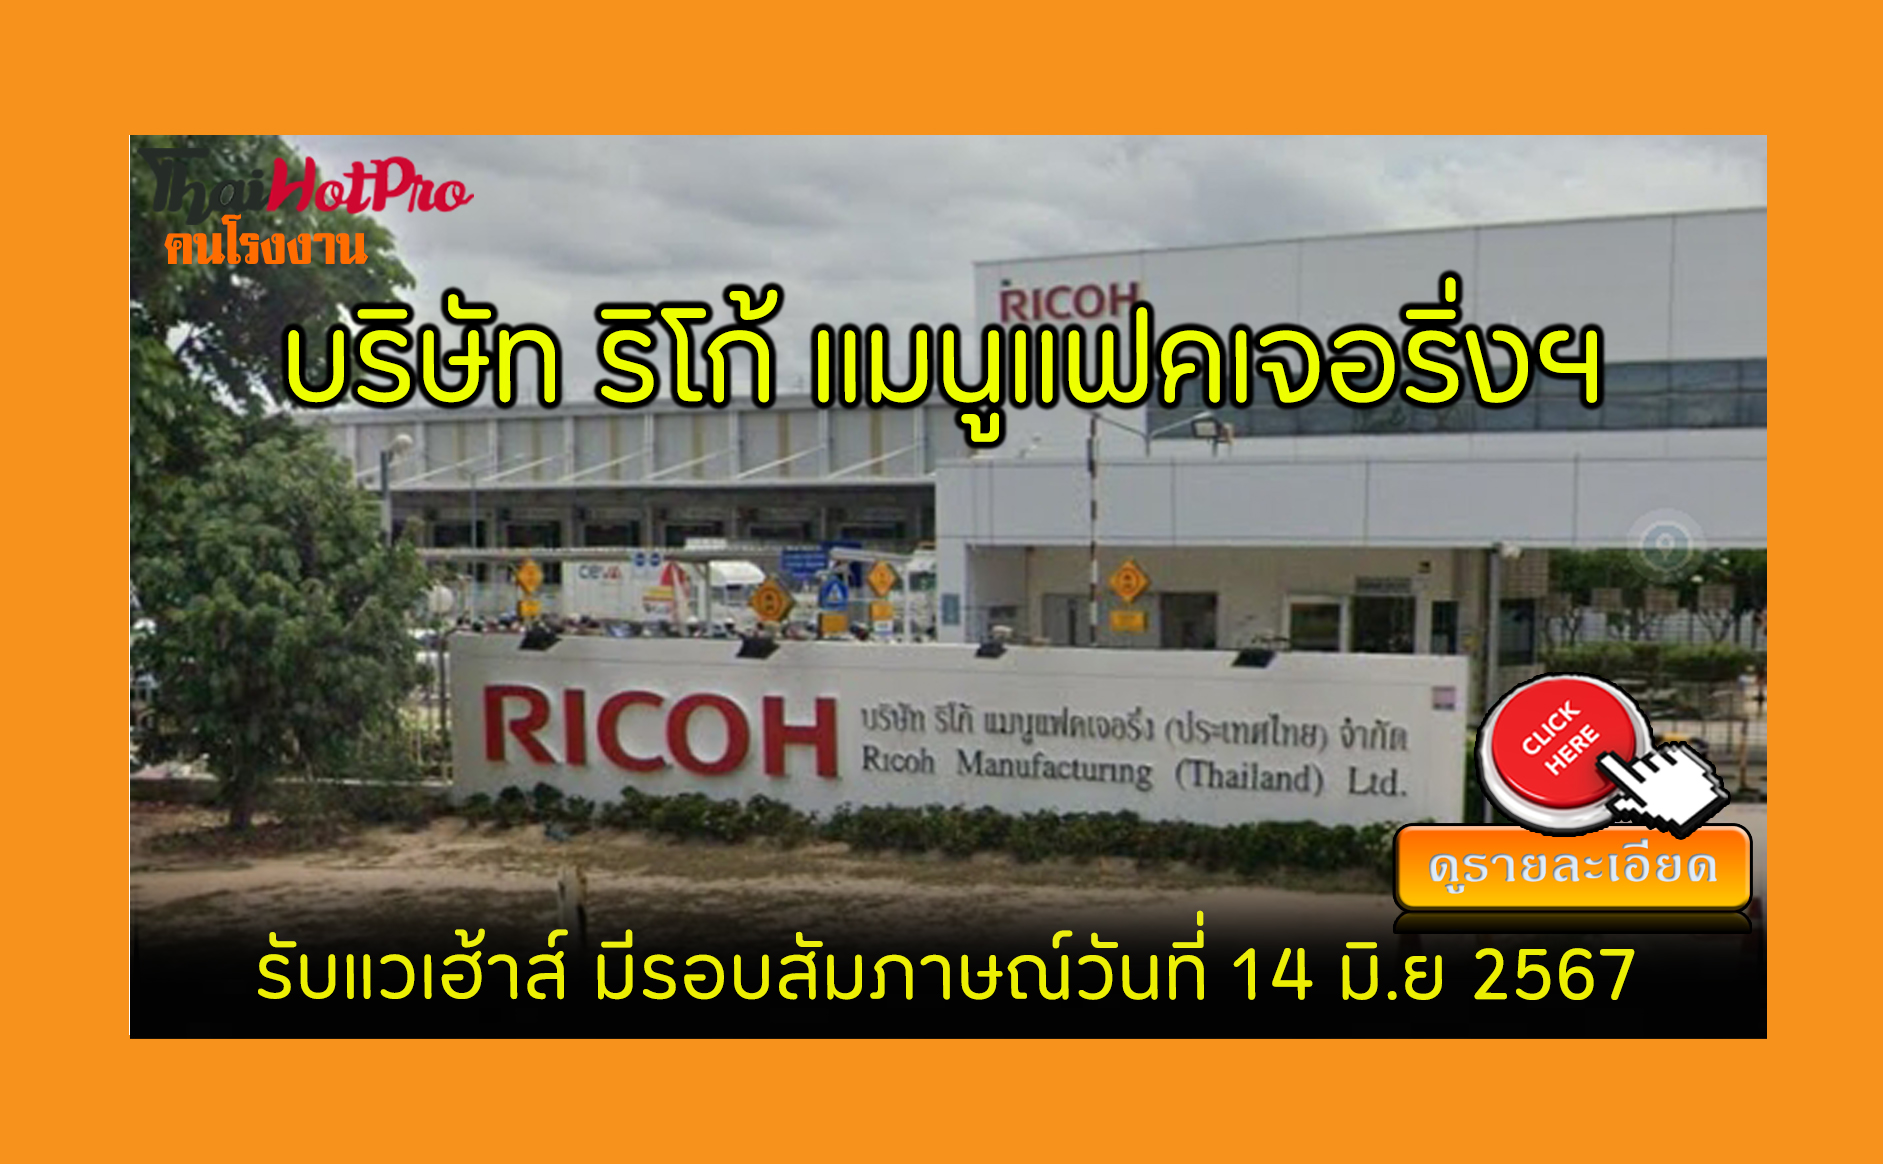 #ข่าวสมัครงาน รับสมัครพนักงาน บริษัท ริโก้ แมนูแฟคเจอริ่ง (ประเทศไทย) จำกัด รับสมัครพนักงานแวเฮ้าส์ มีรอบสัมภาษณ์วันที่ 14 มิ.ย 2567 อมตะซิตี้ระยอง, ปลวกแดง, ระยอง